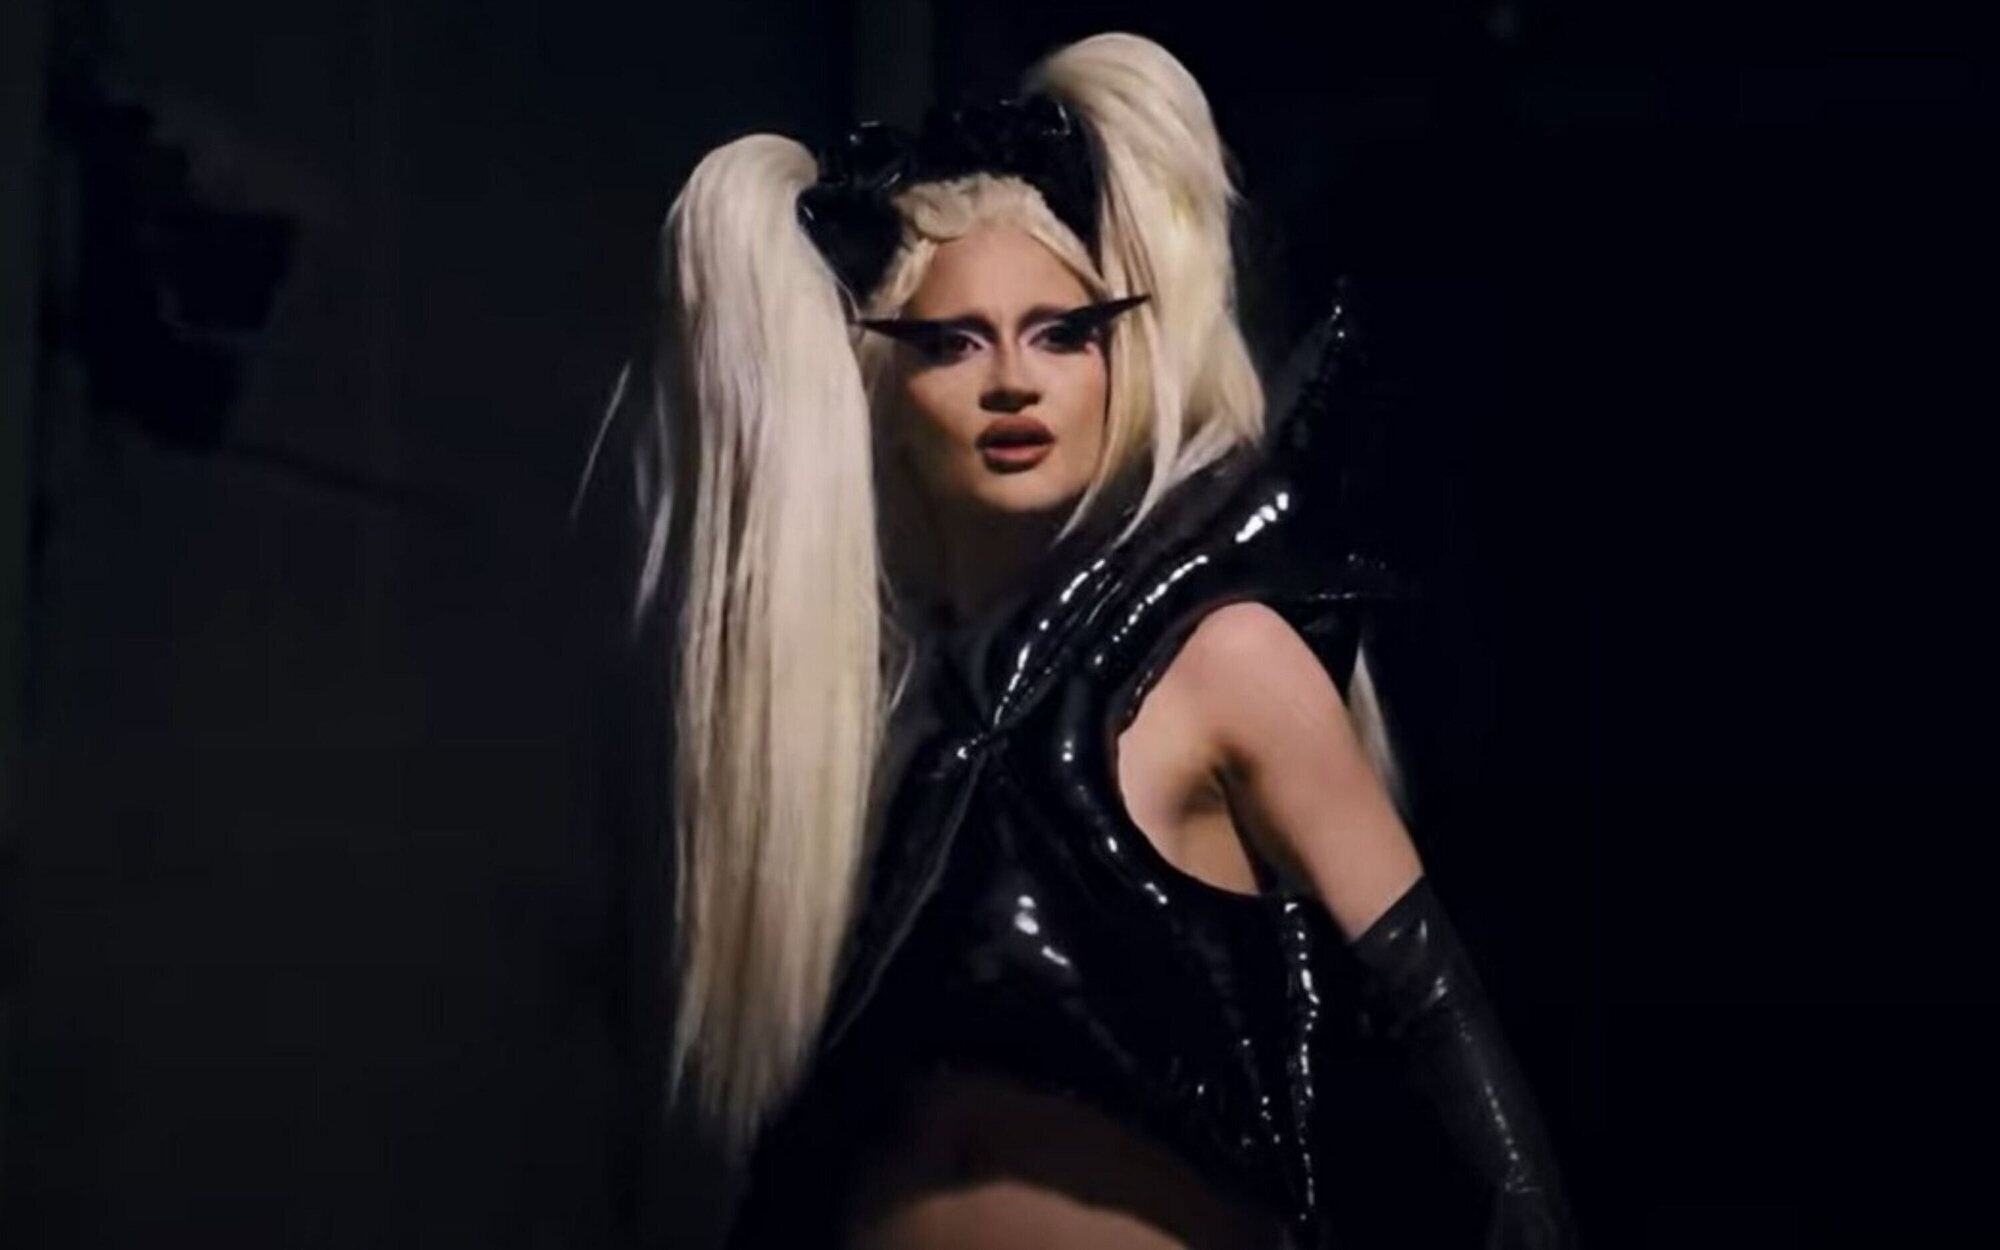 Luna Ki estrena el videoclip de "Voy a morir" con dardazos a RTVE por la polémica del autotune